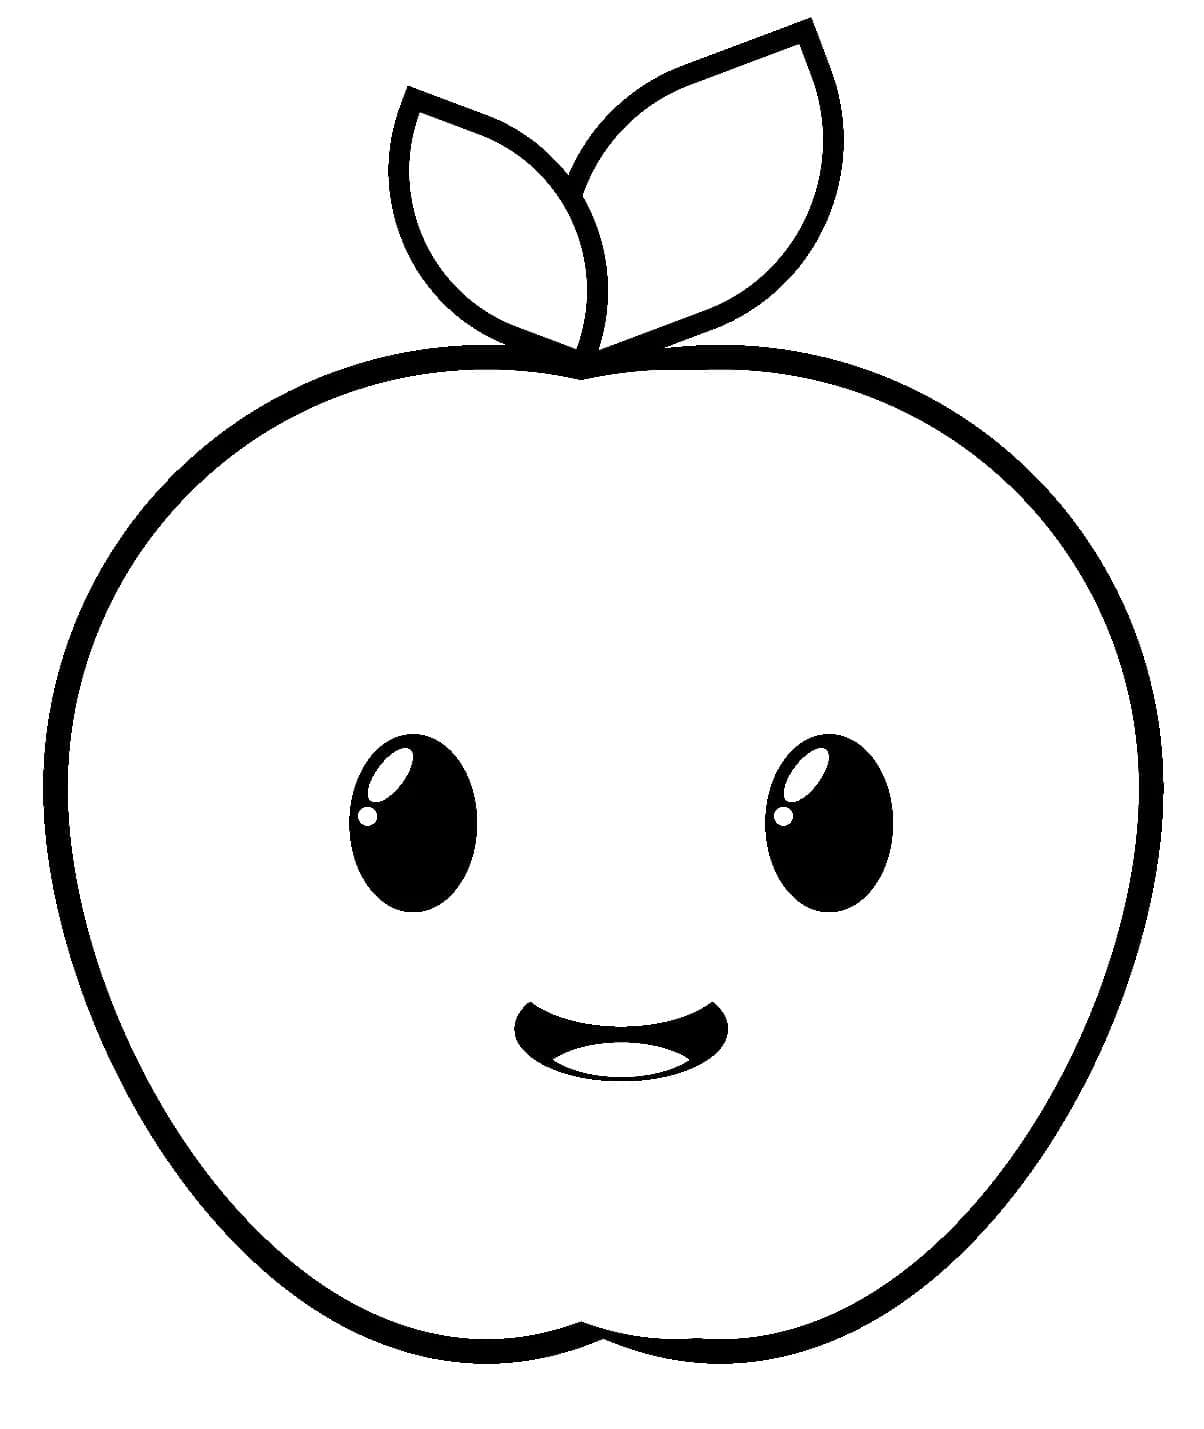 Un măr foarte drăguț